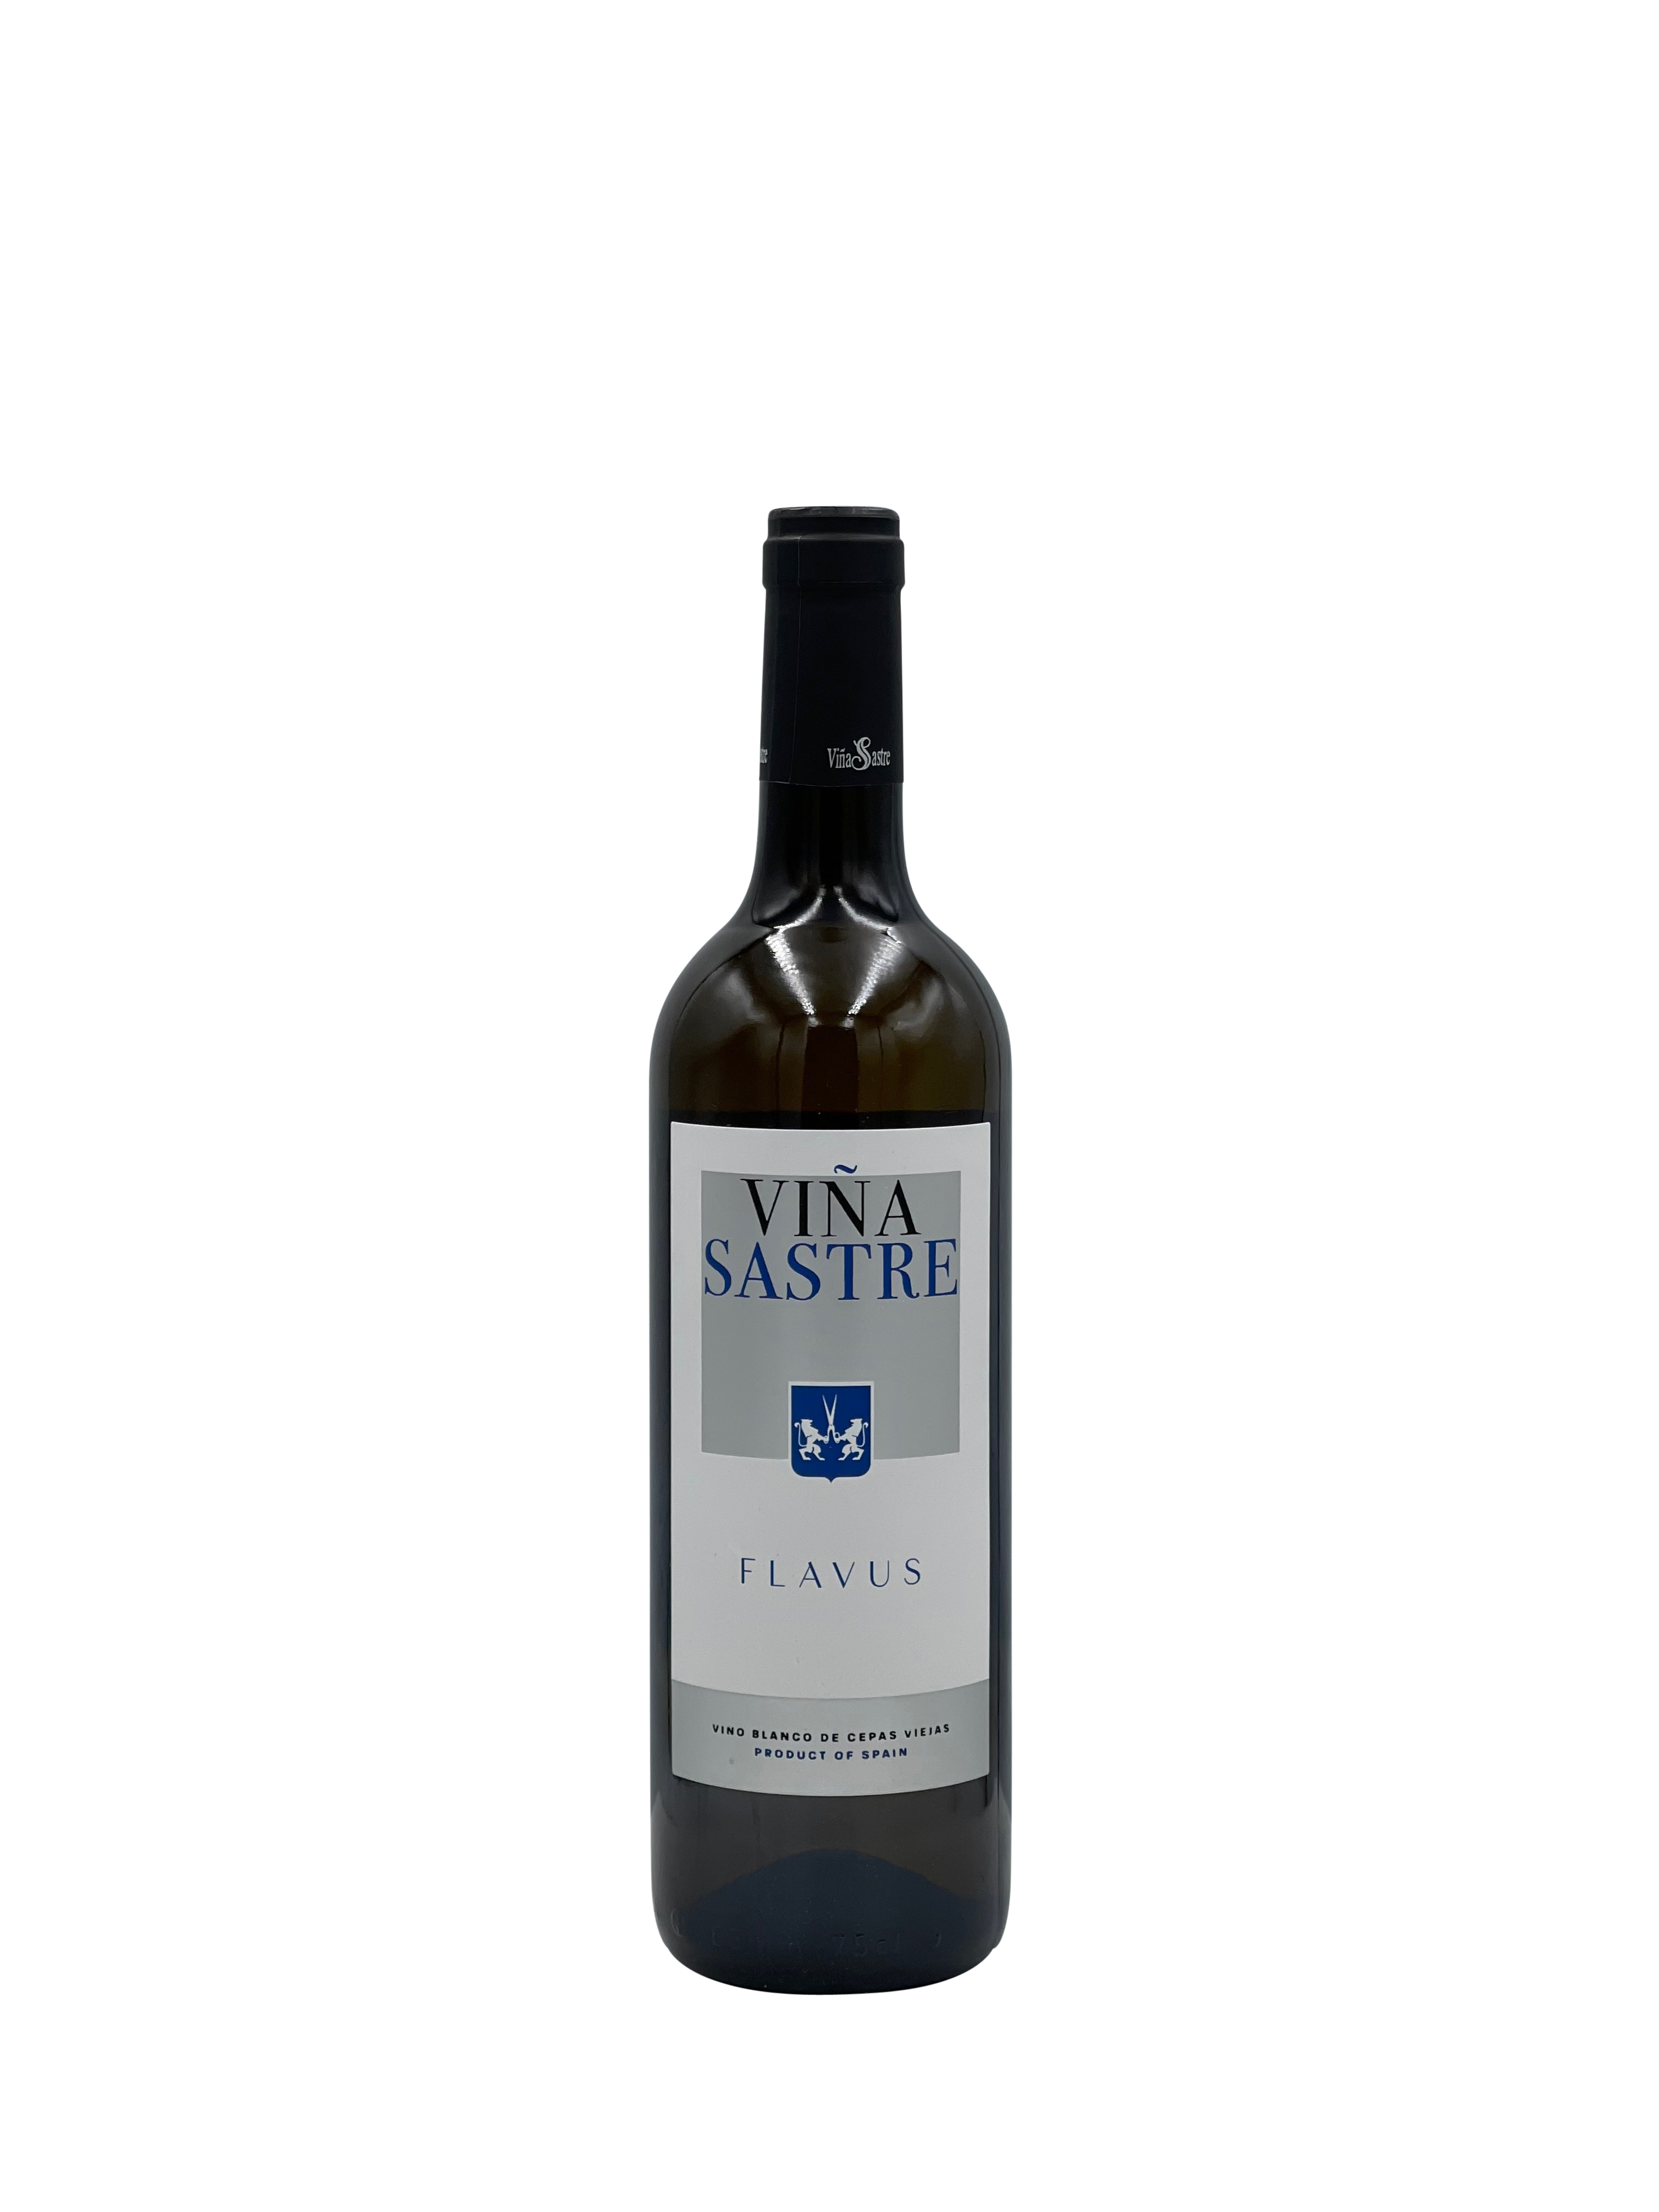 Viña Sastre "Flavus" Blanco, Vino de Cepas Viejas '18